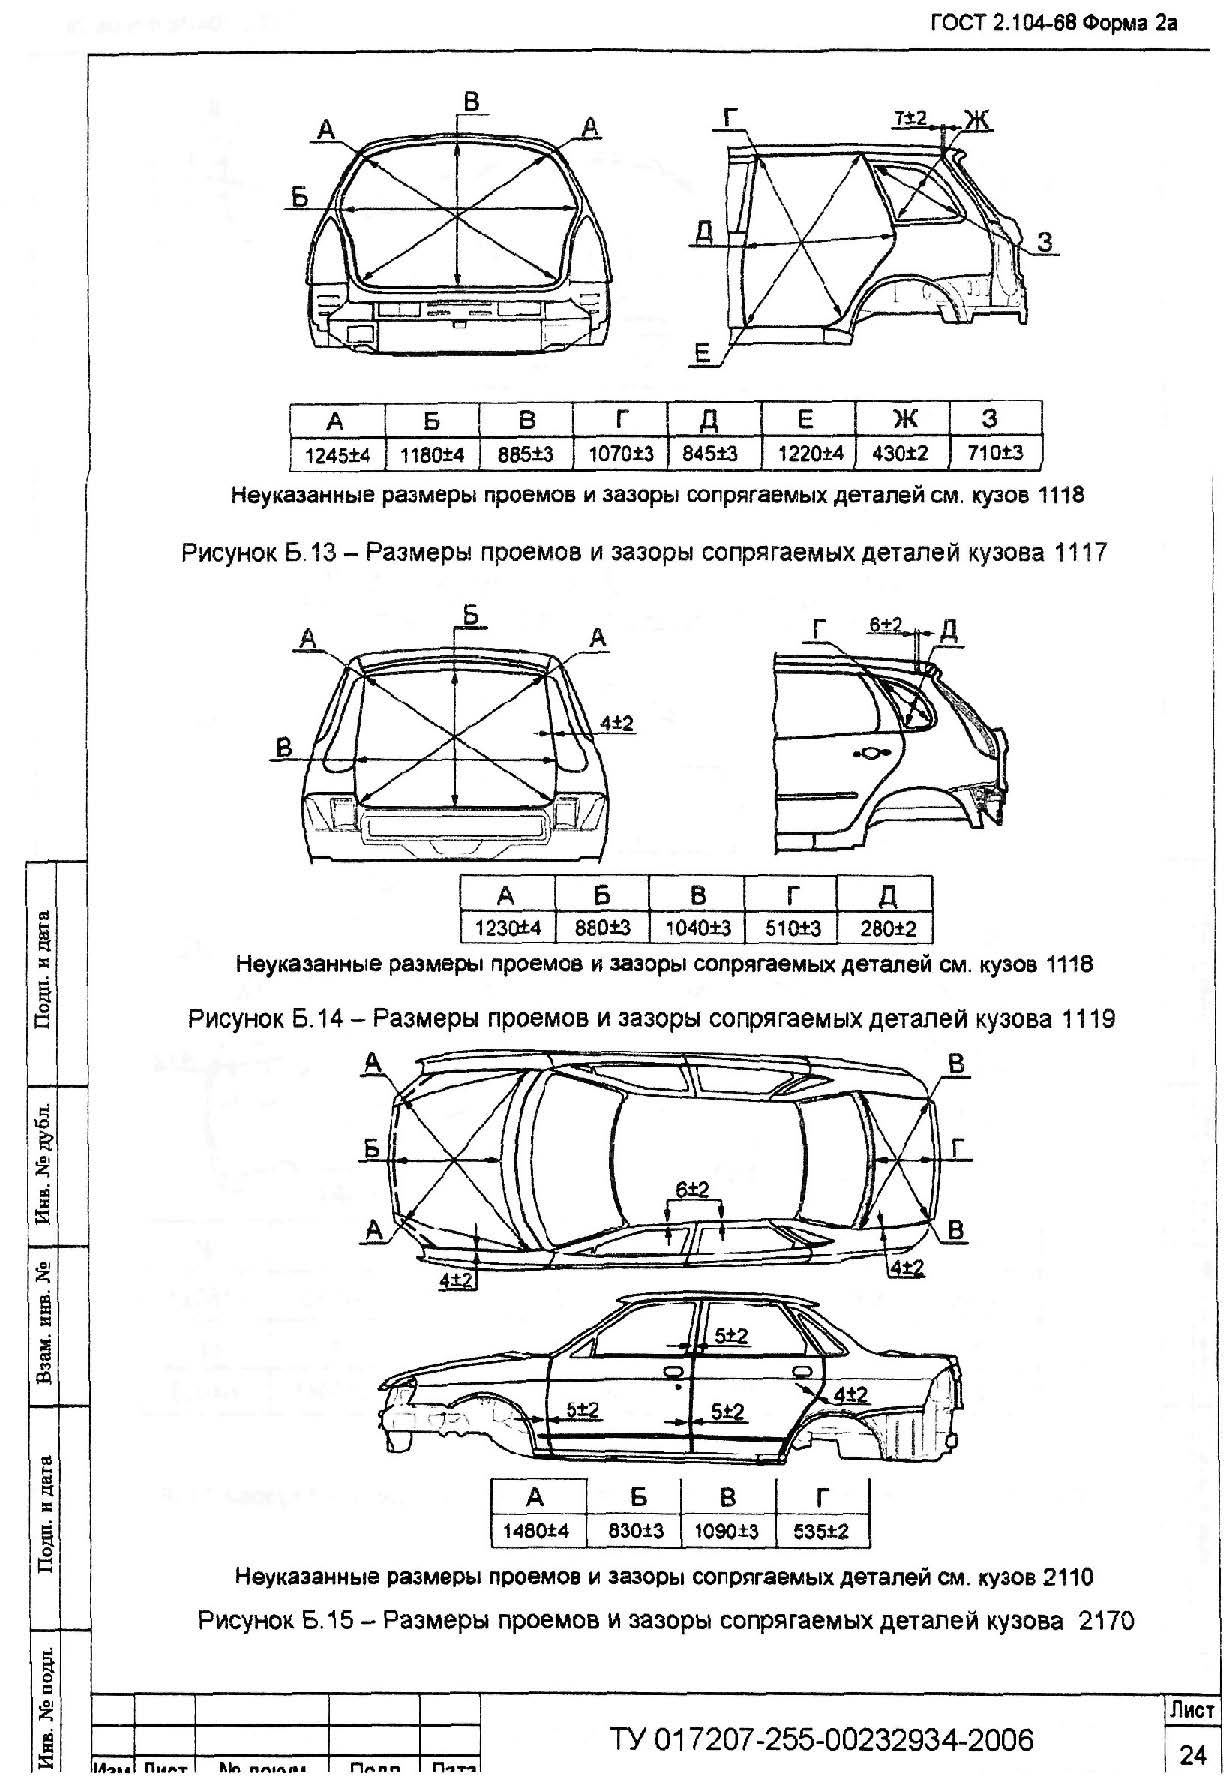 Размеры кузовных ремонтов. Геометрия кузова ВАЗ 2110. Контрольные точки ВАЗ 2170 Приора.